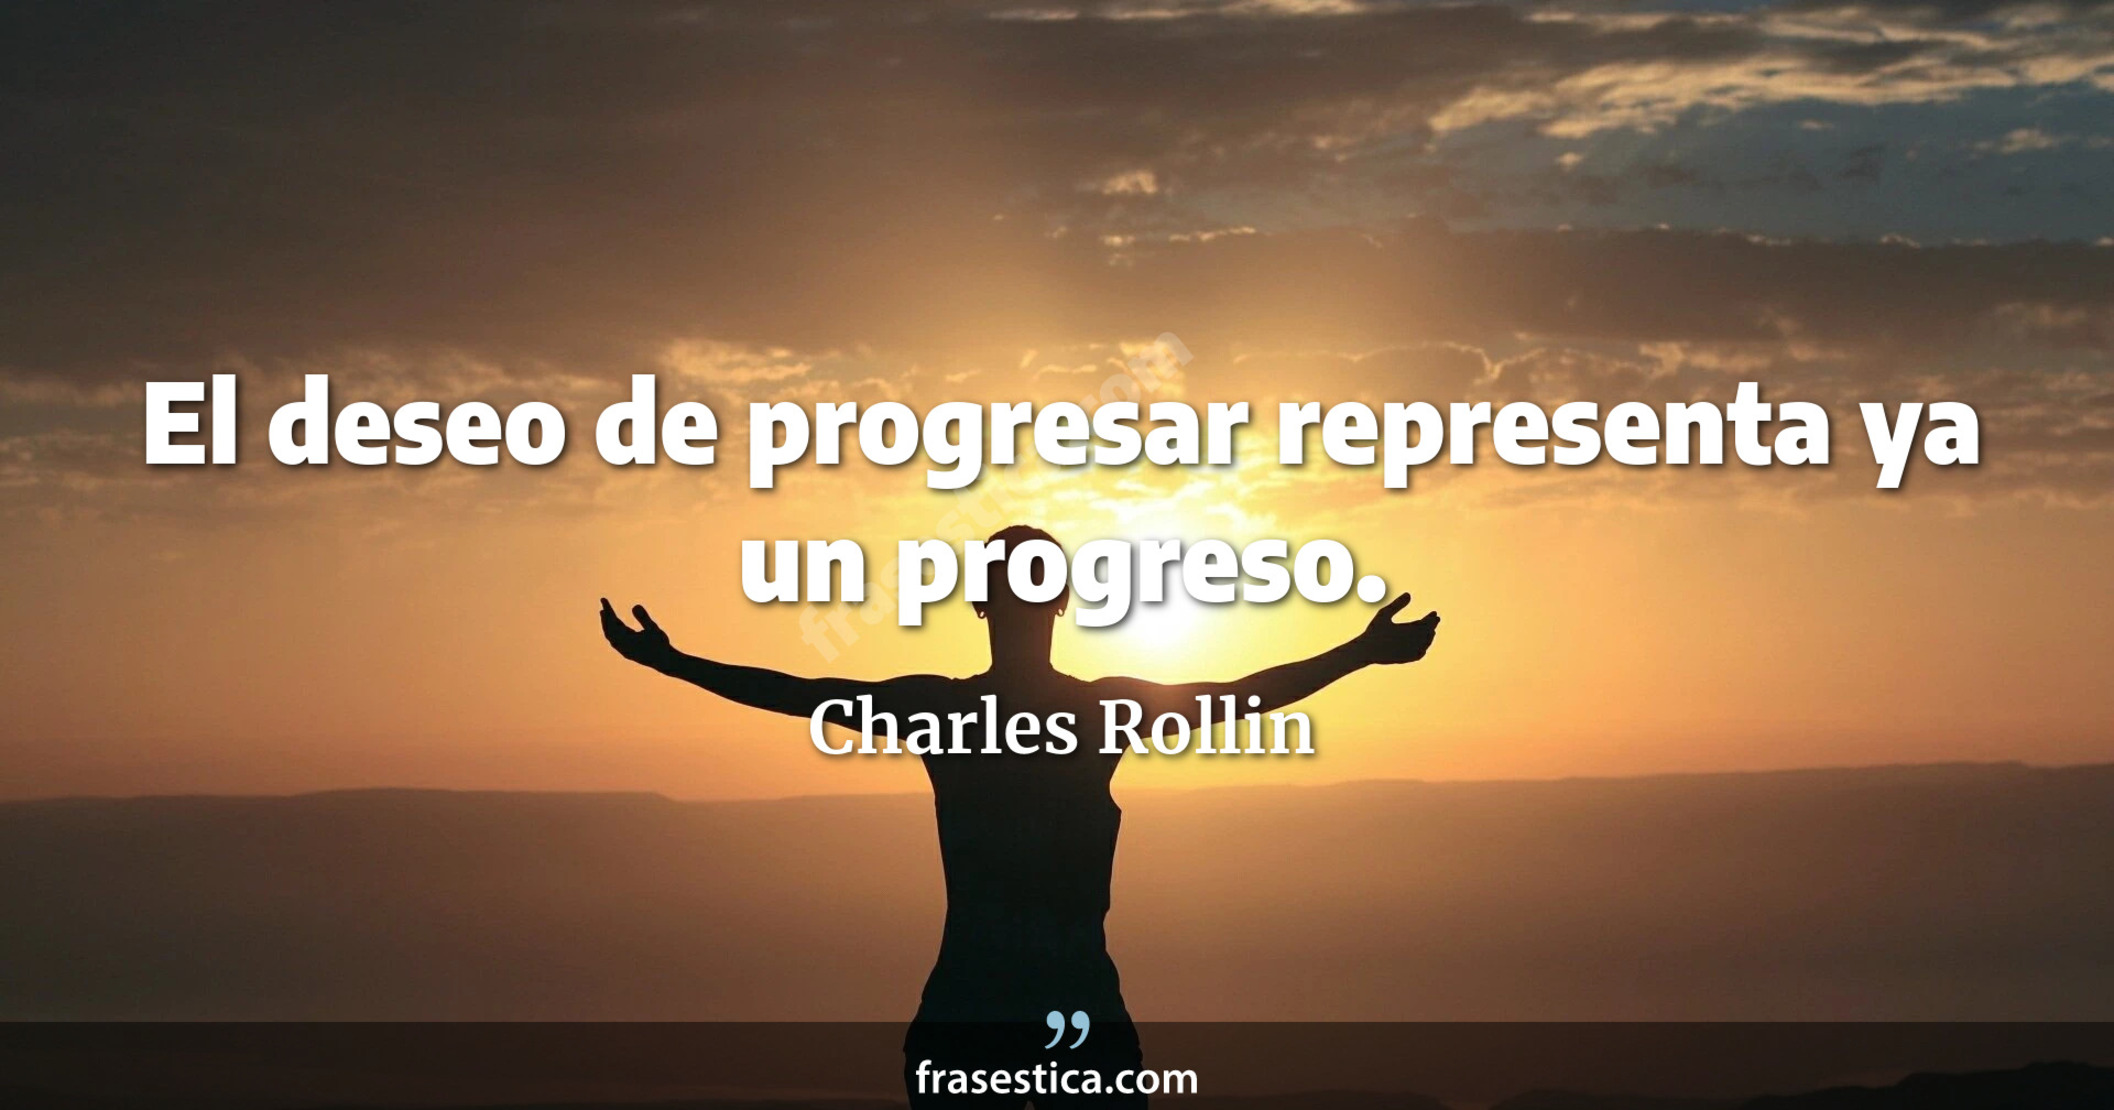 El deseo de progresar representa ya un progreso. - Charles Rollin